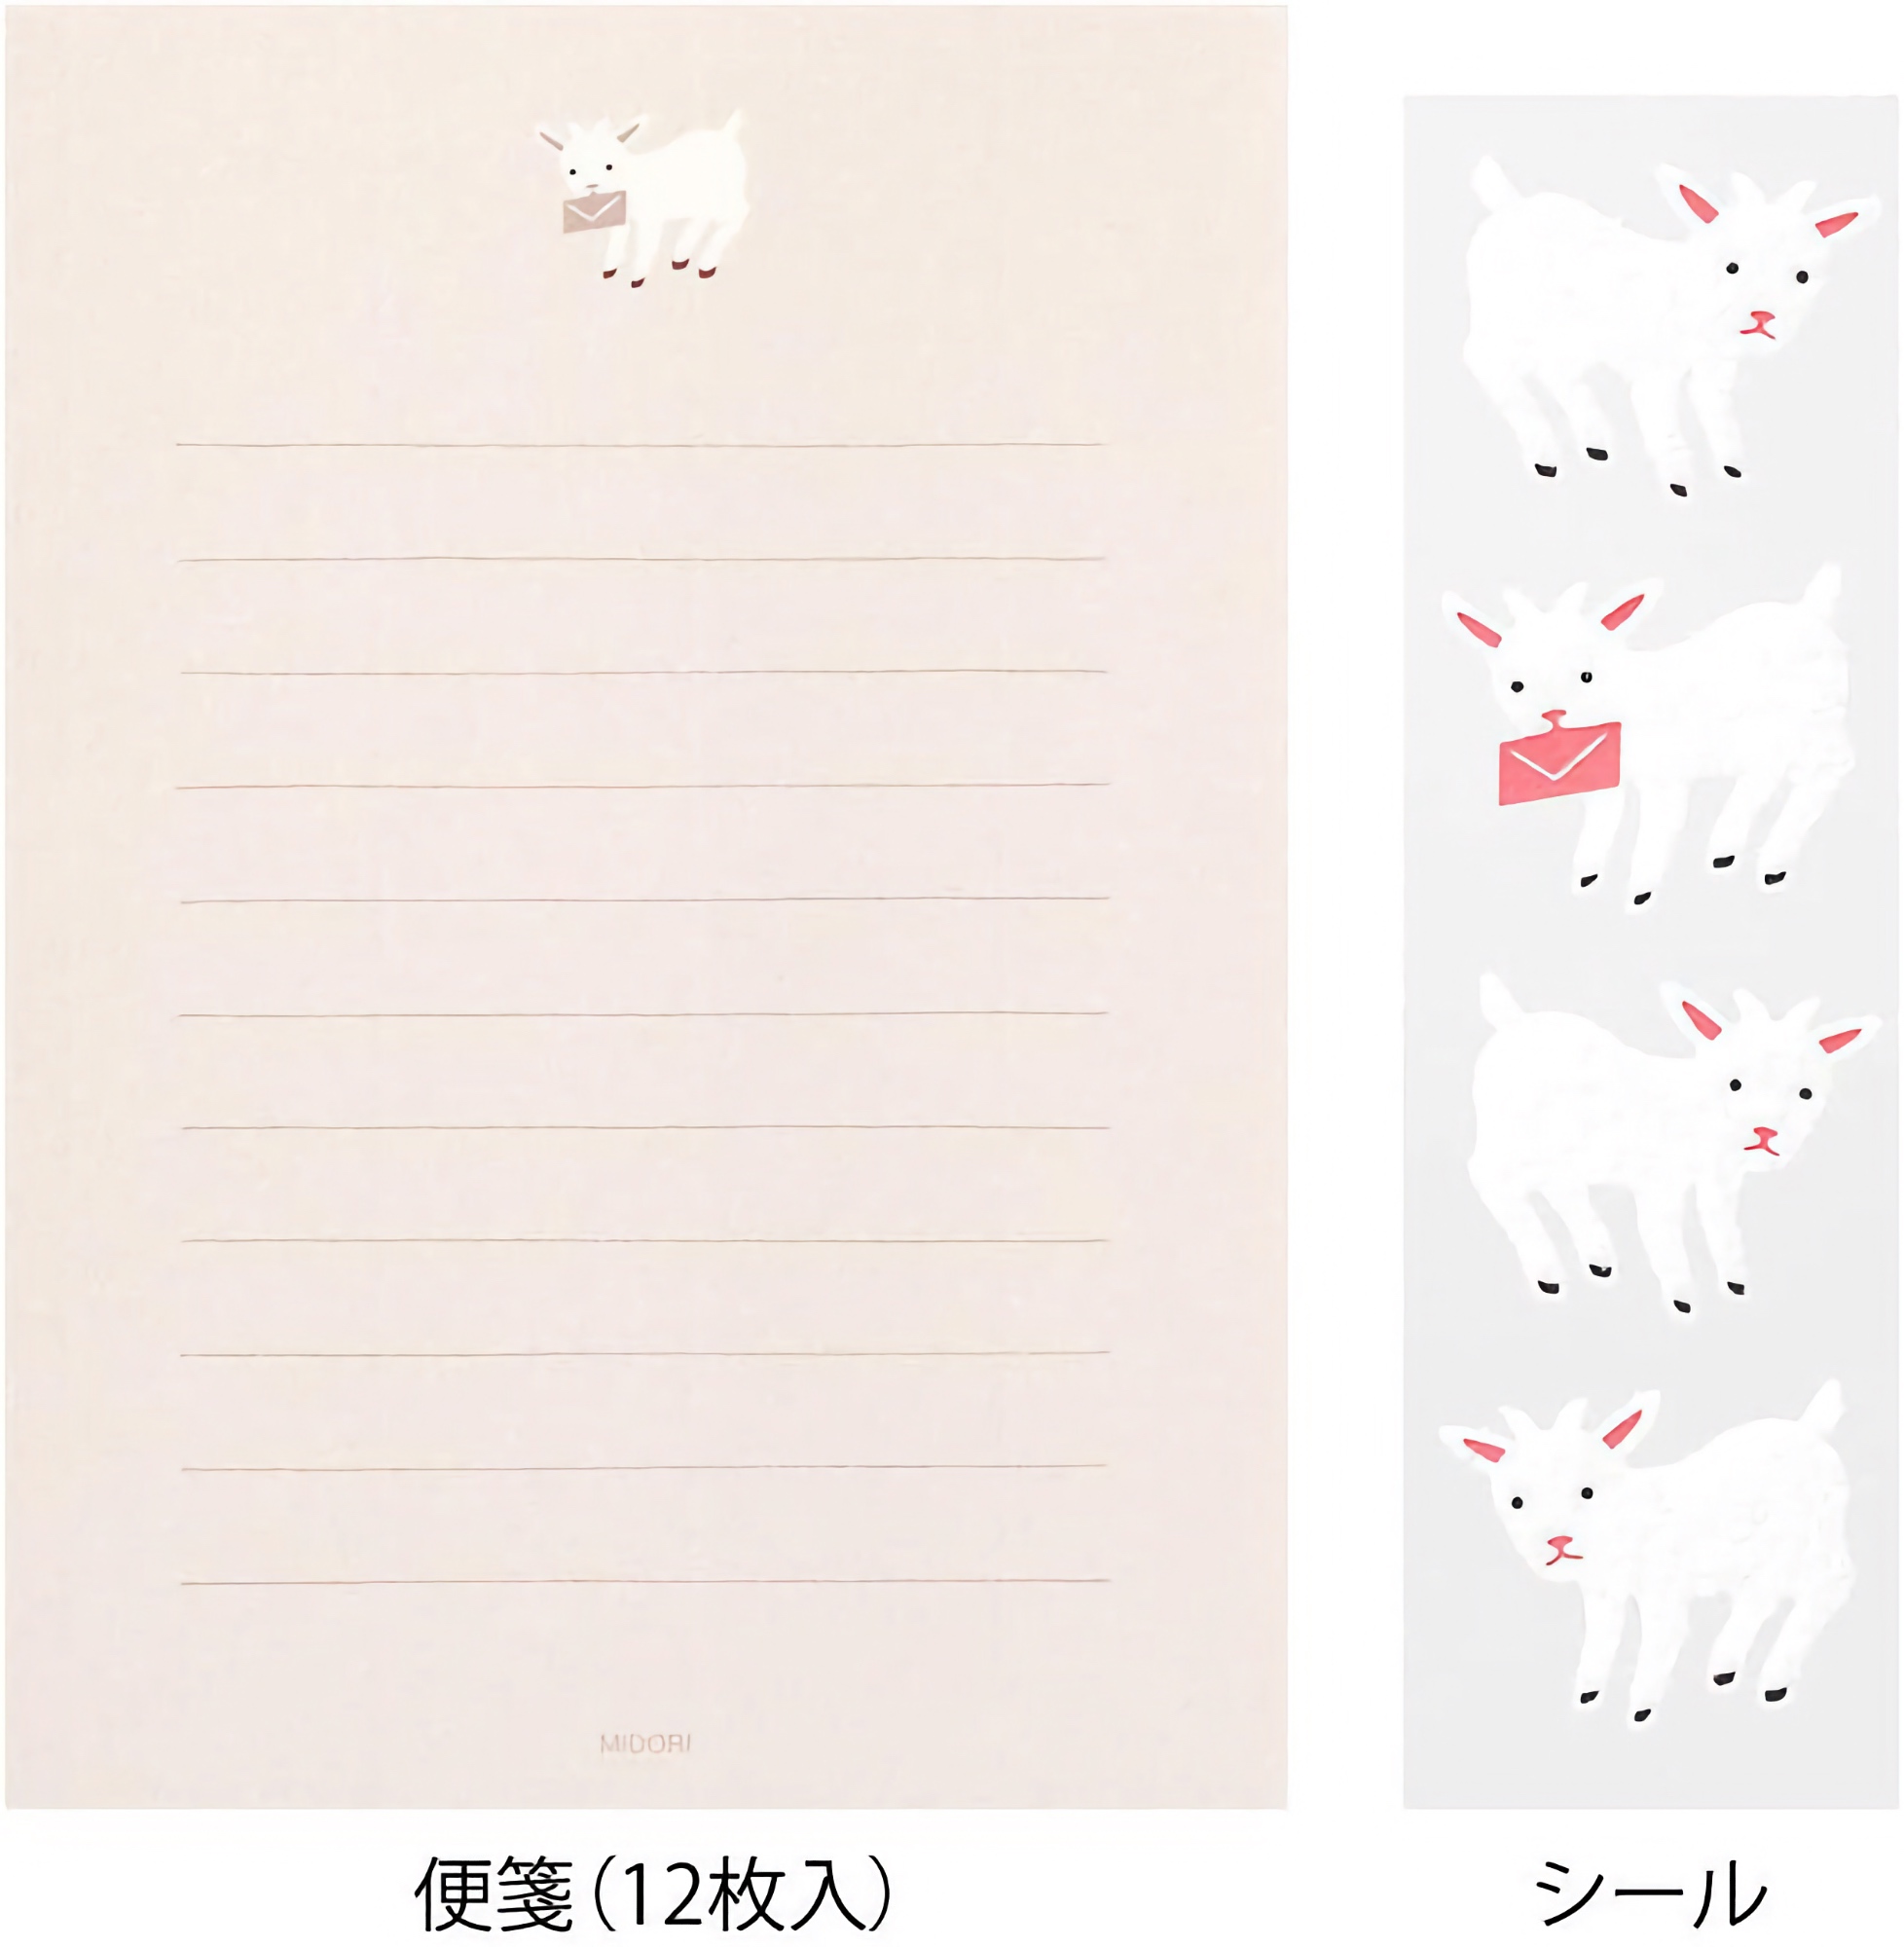 Midori Letter Set Goat